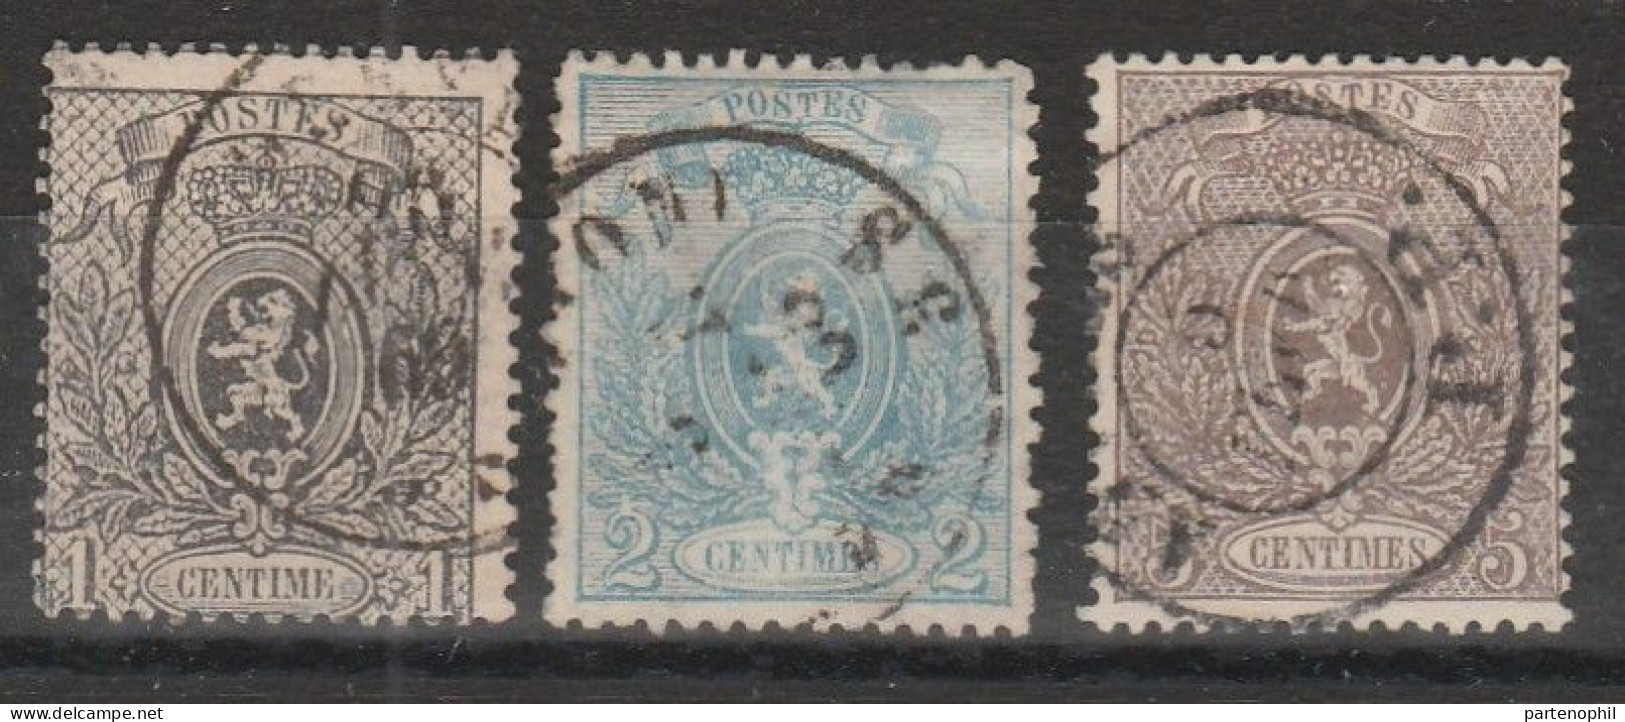 416 Belgio Belgium 1866 - Stemma, Dentellati 14½x14, N. 22/25. Cat. € 201,00. SPL - 1866-1867 Coat Of Arms